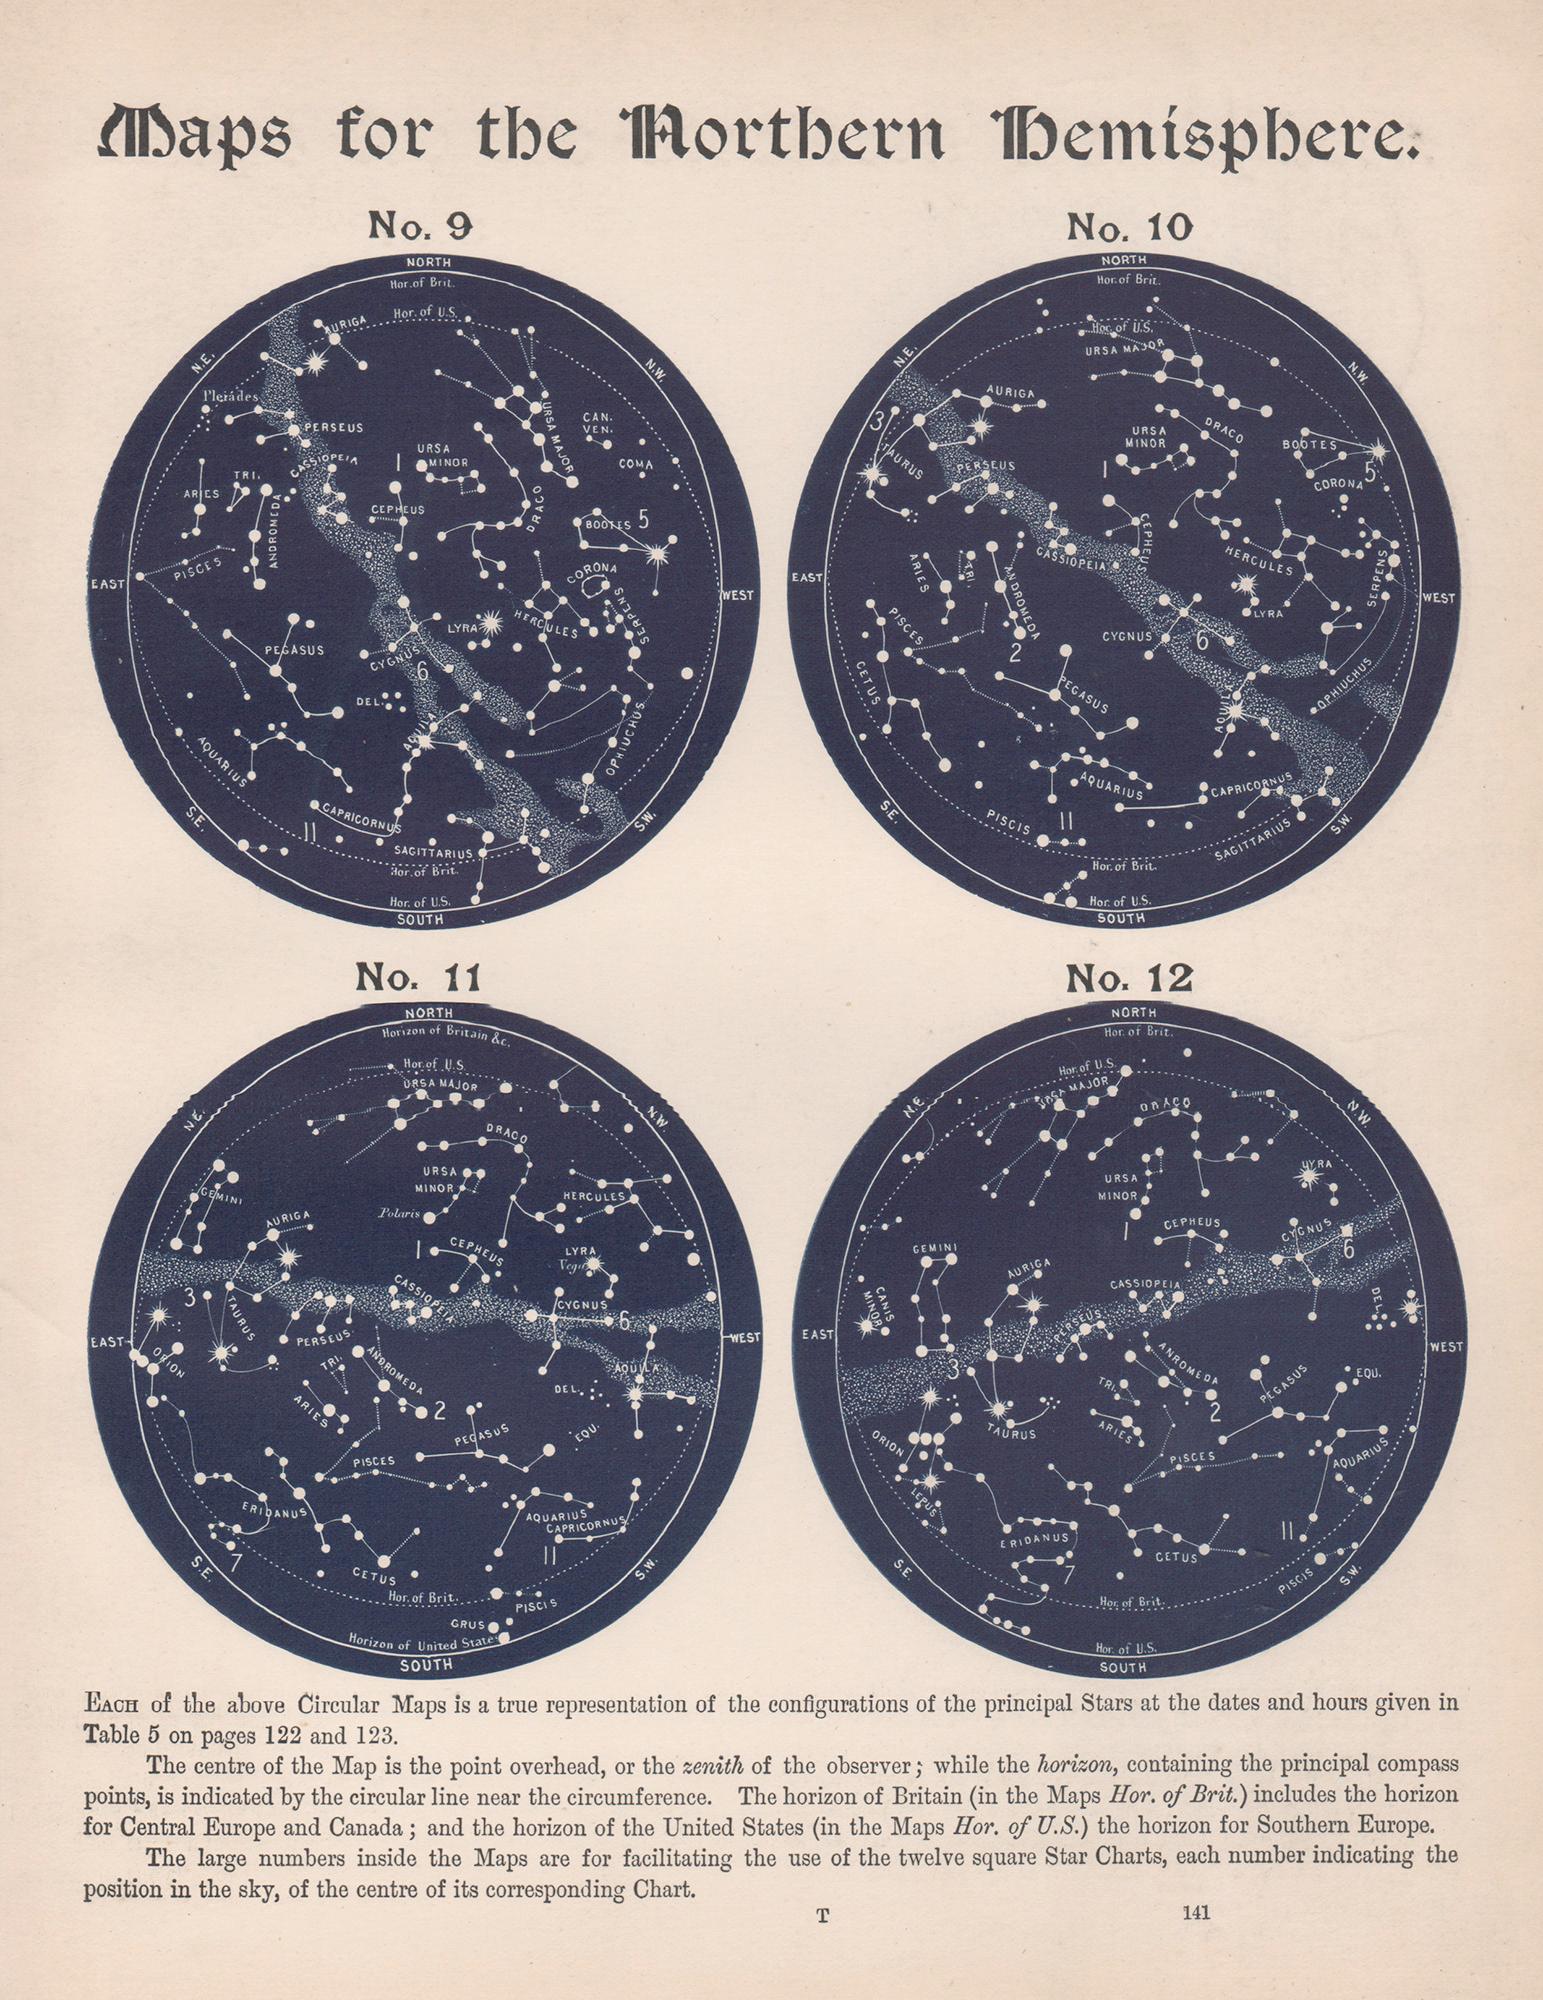 Cartes de l'hémisphère nord. Antiquité - Astronomie - Gravure sur constellation d'étoiles